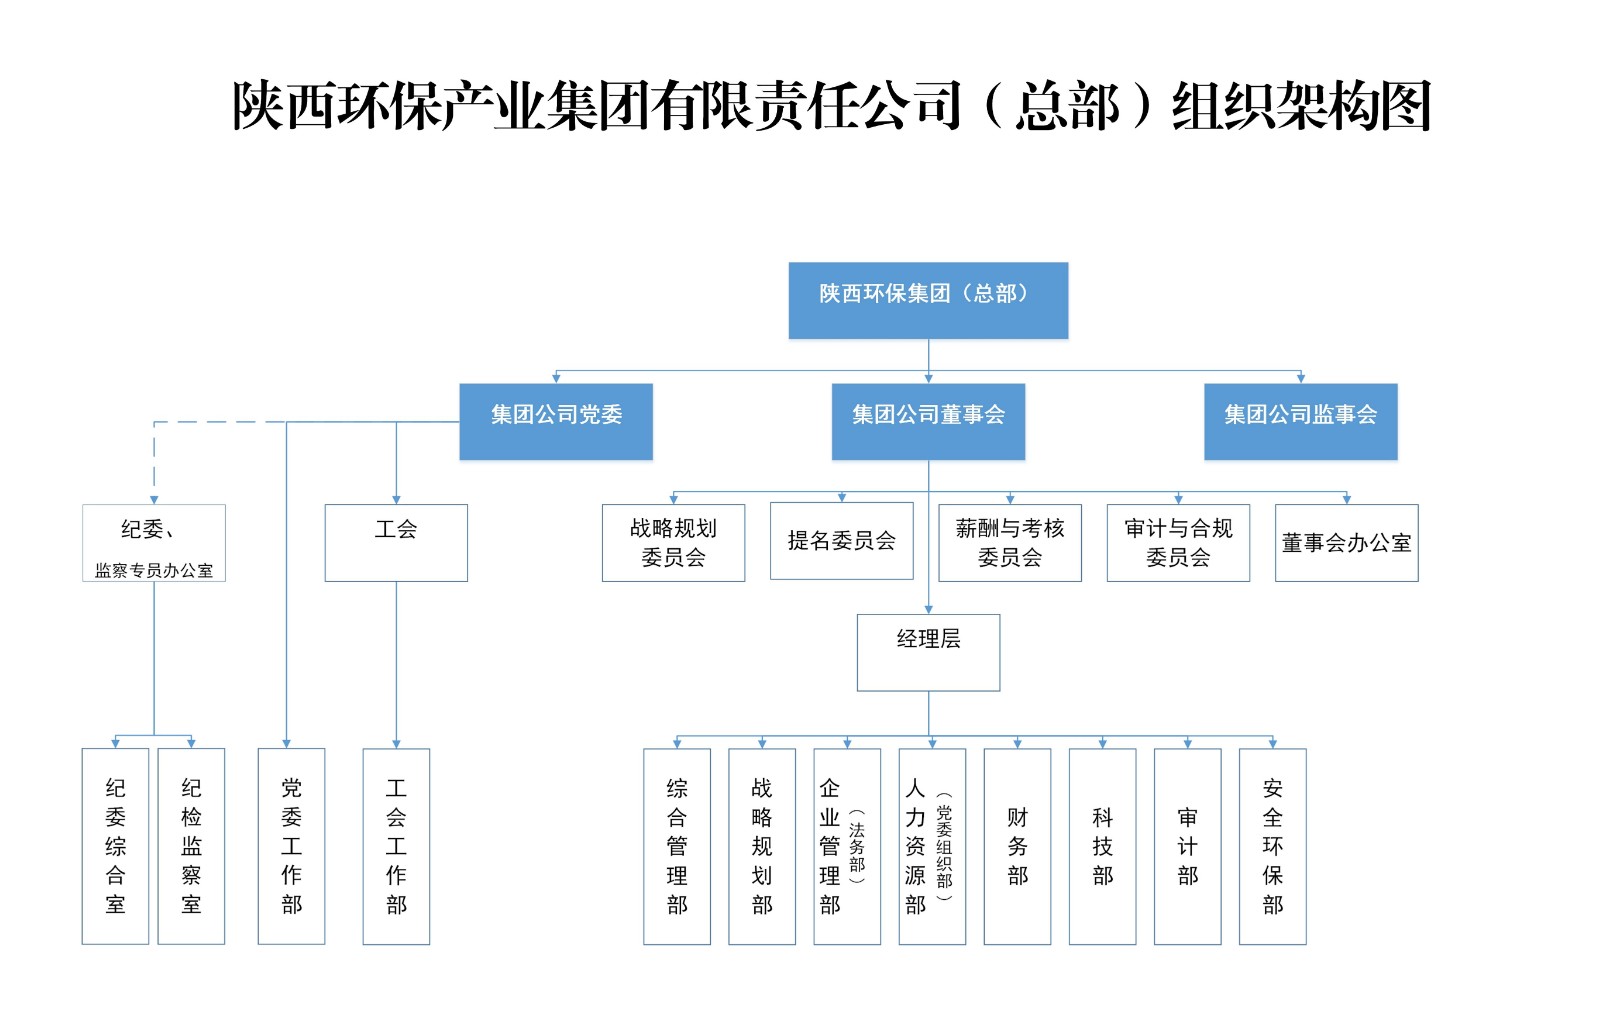 玩球网站(中国)责任有限公司总部组织架构图.jpg